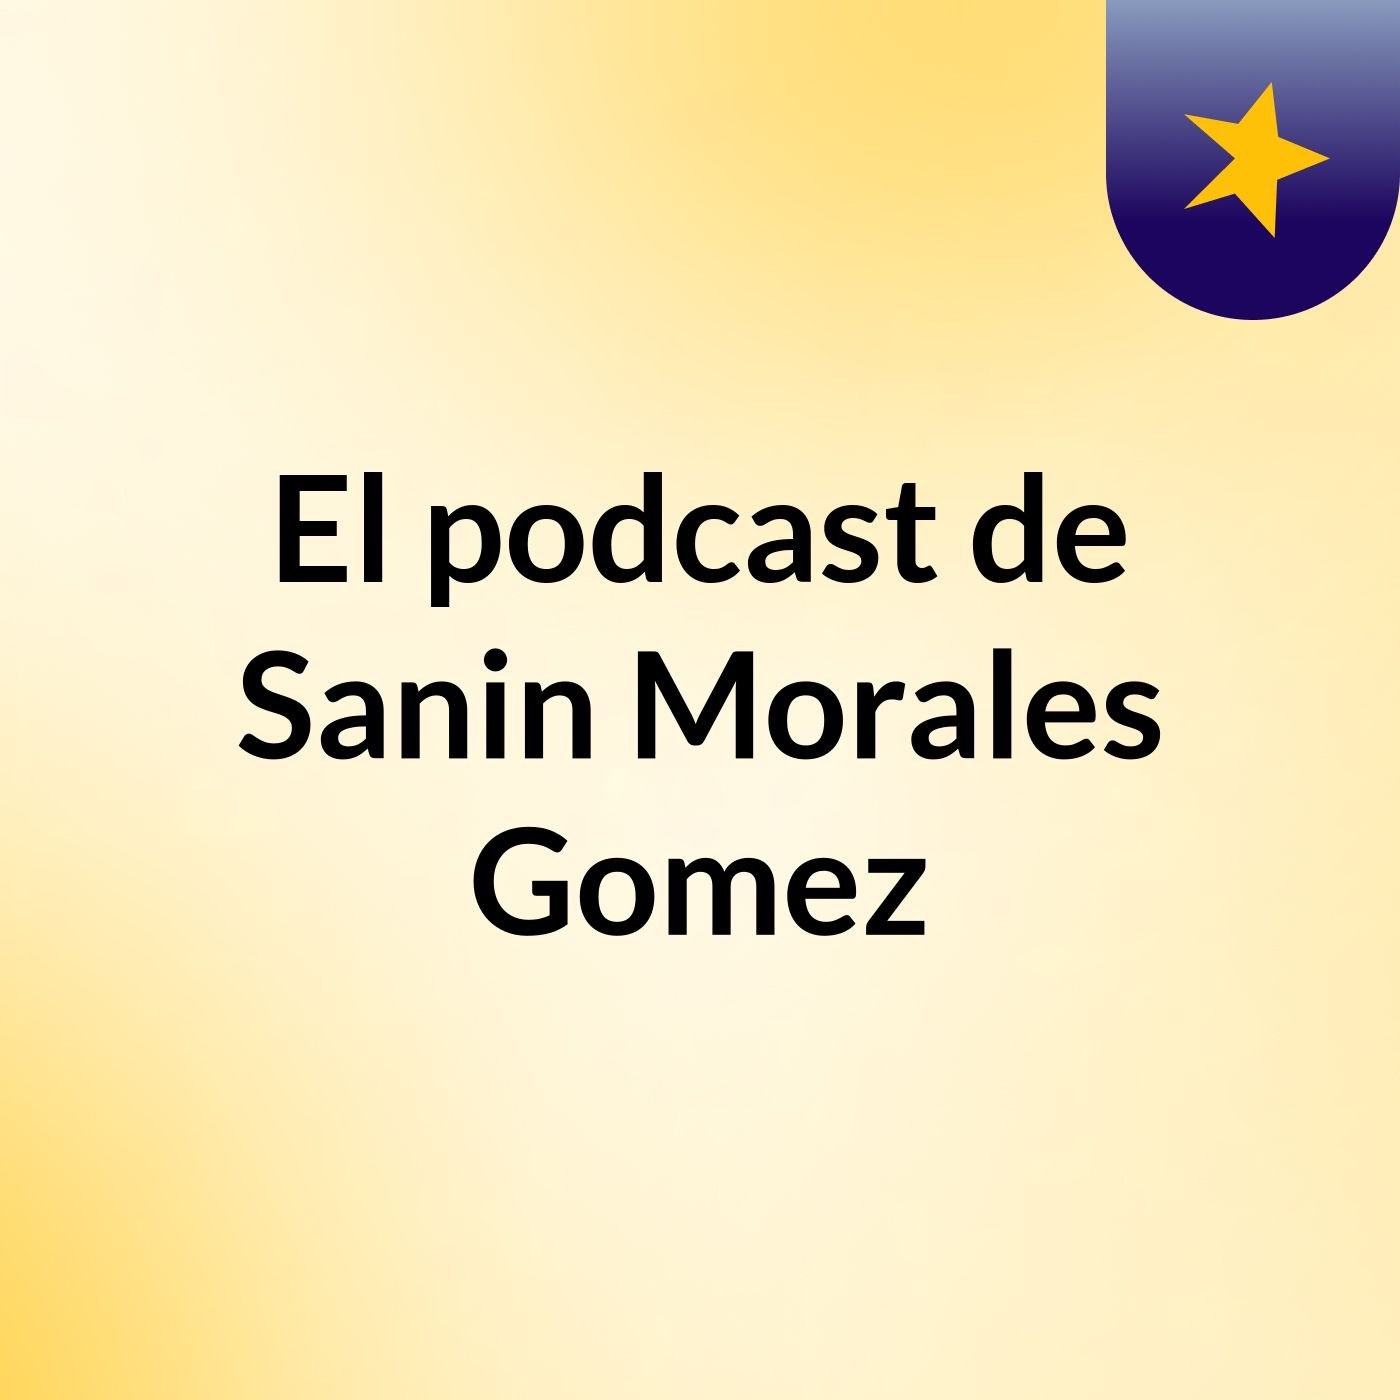 Episodio 2 - El podcast de Sanin Morales Gomez